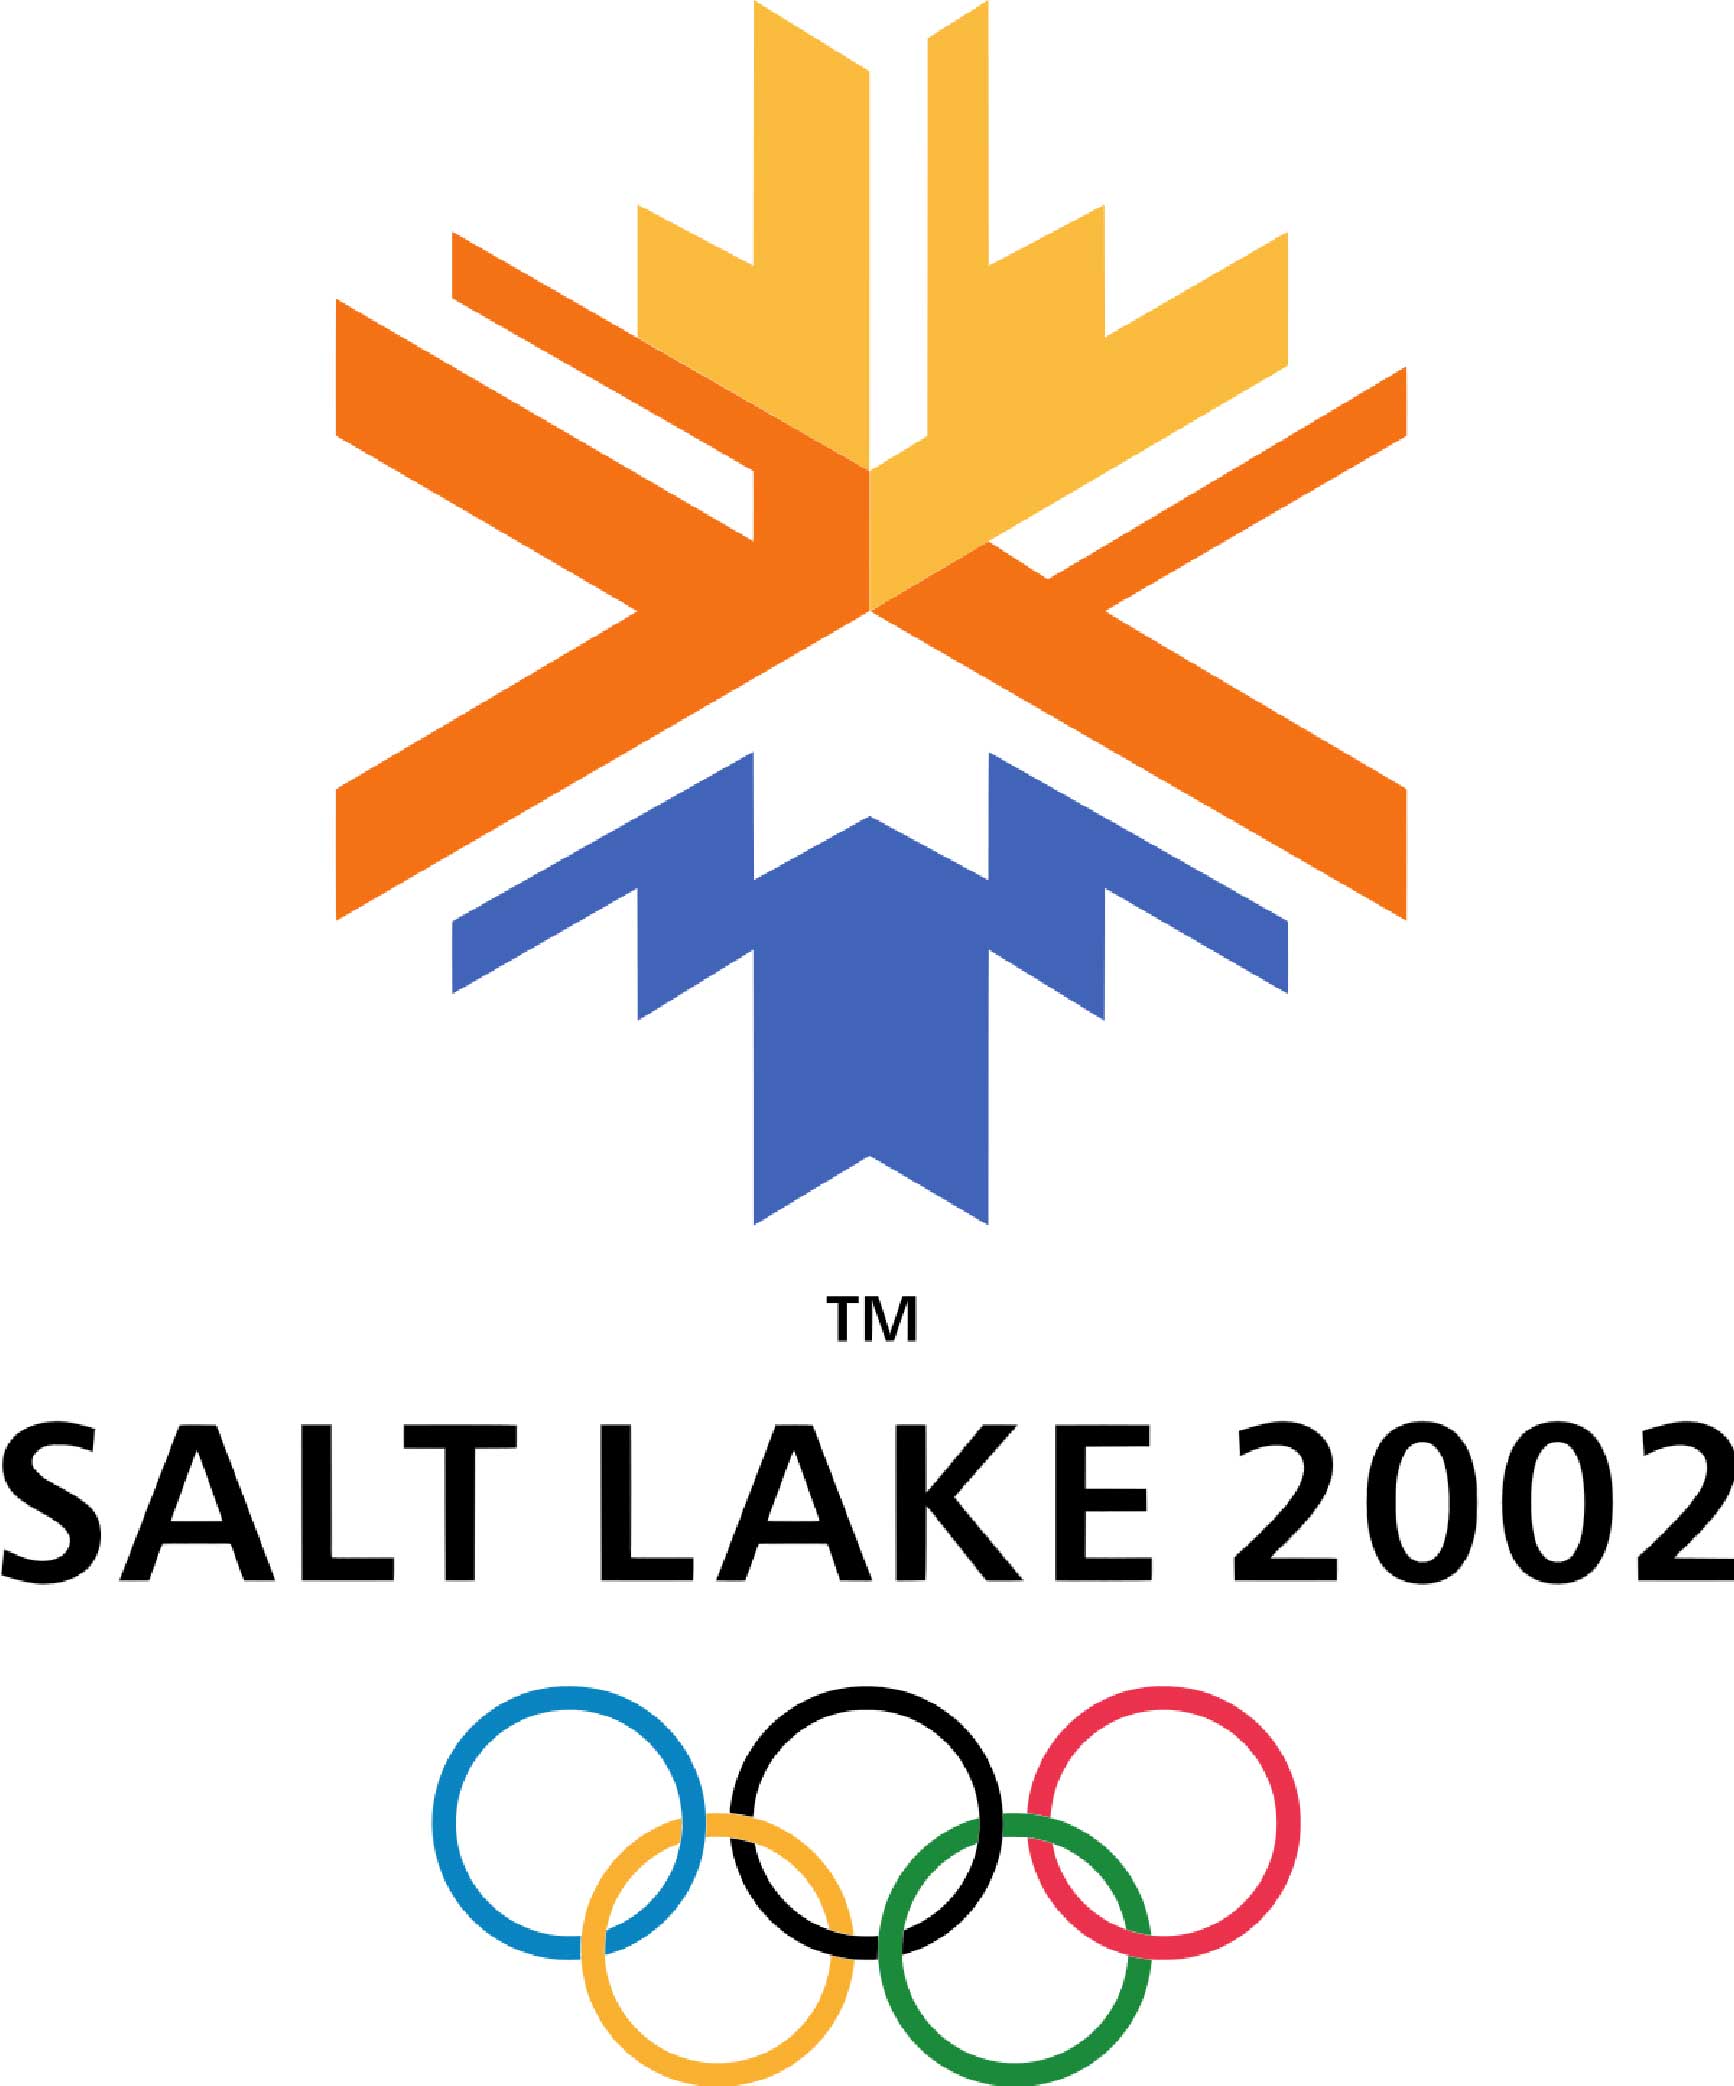 2002年冬季奥运会的标志